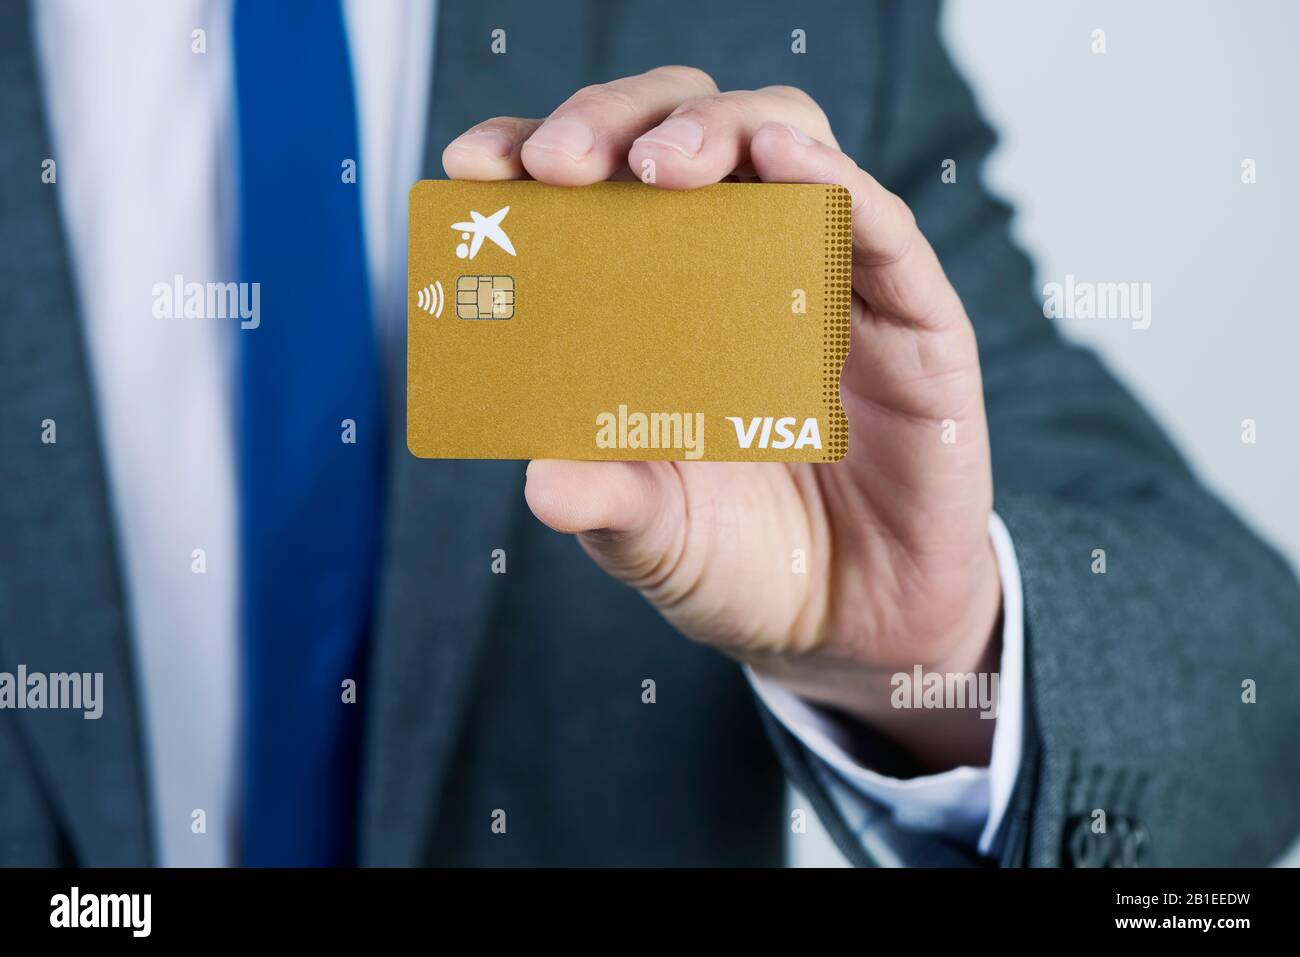 Barcelona, ESPAÑA - 13 DE FEBRERO de 2020: Un hombre de negocios, en un  elegante traje gris, muestra una tarjeta de crédito Visa Gold de CaixaBank  Fotografía de stock - Alamy